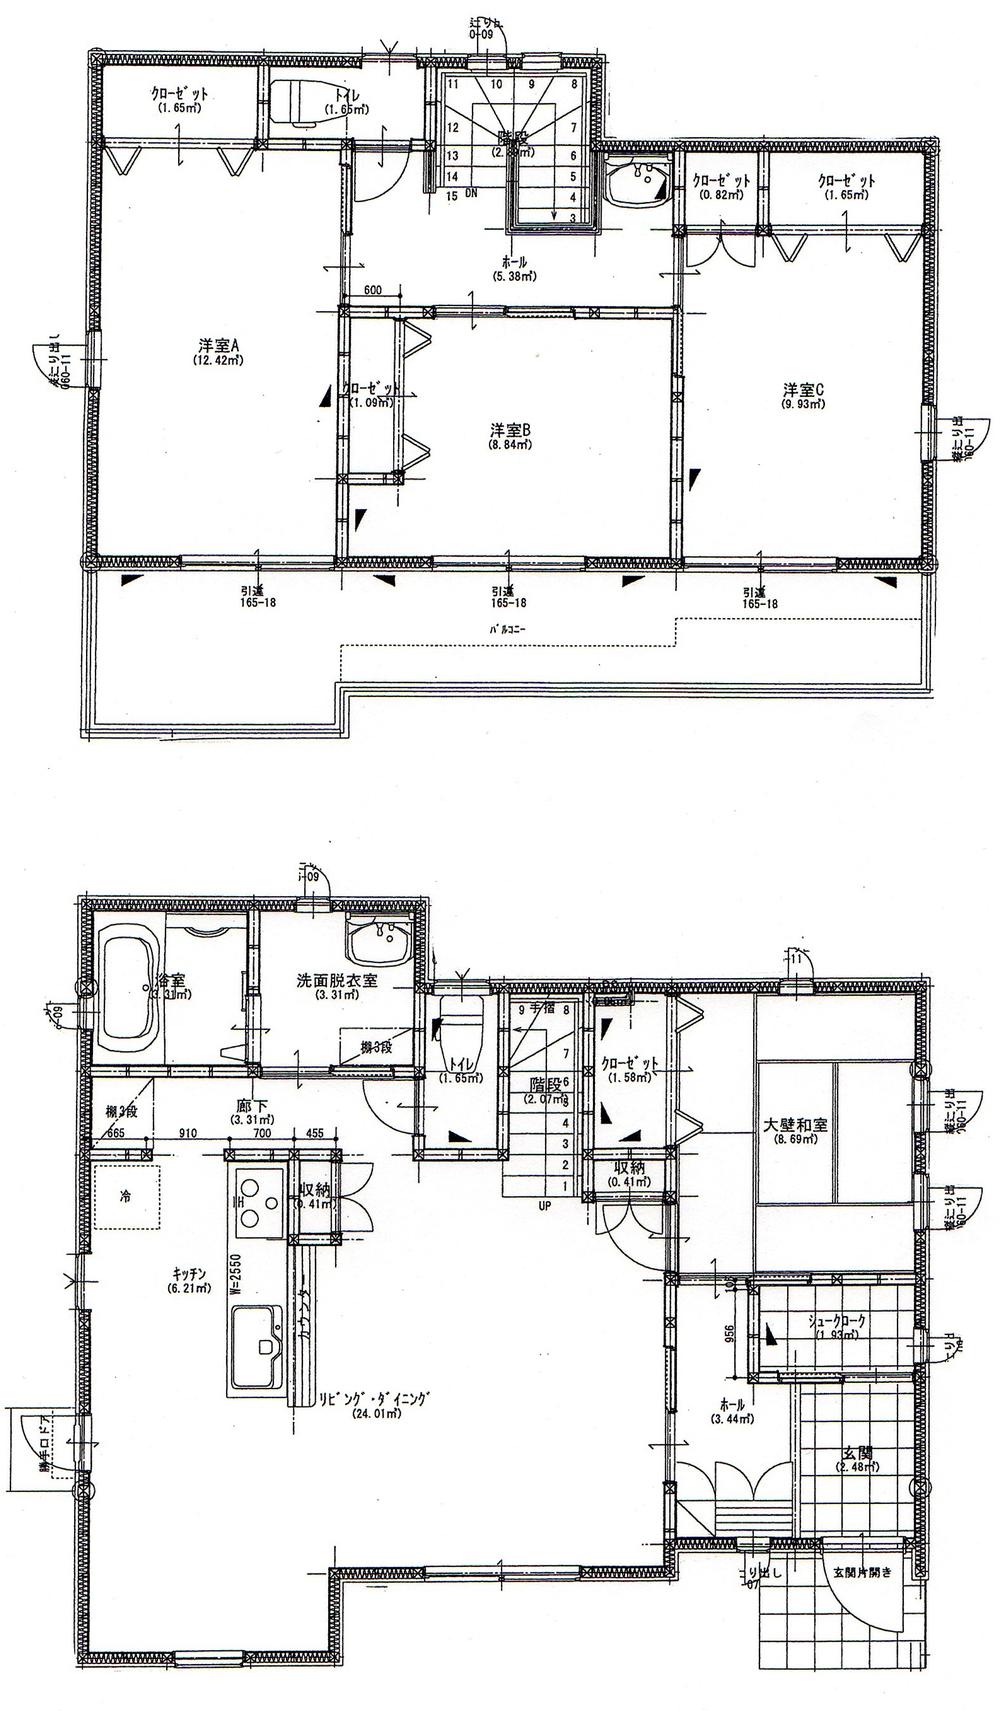 Floor plan. 23.8 million yen, 4LDK, Land area 219.72 sq m , Building area 109.3 sq m